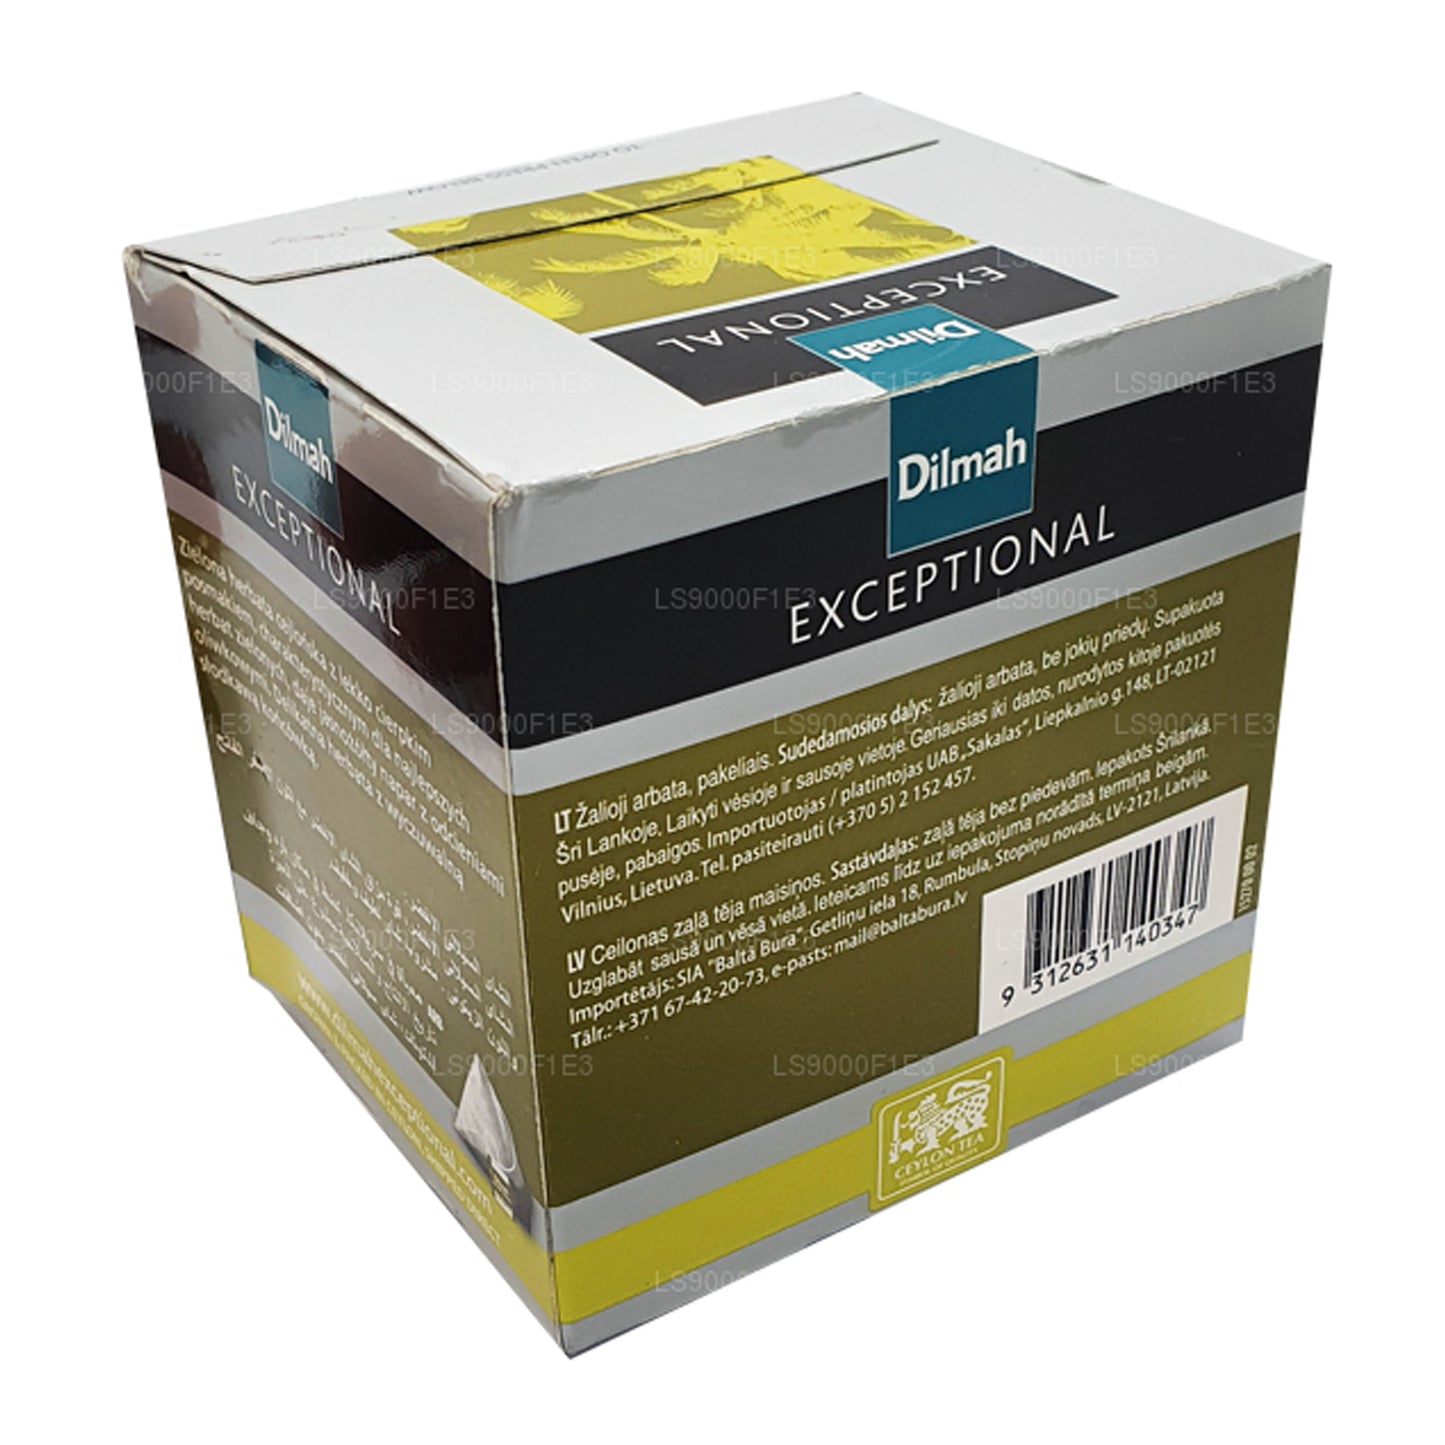 Цейлонский зеленый чай Dilmah Exceptional (40 г) 20 пакетиков